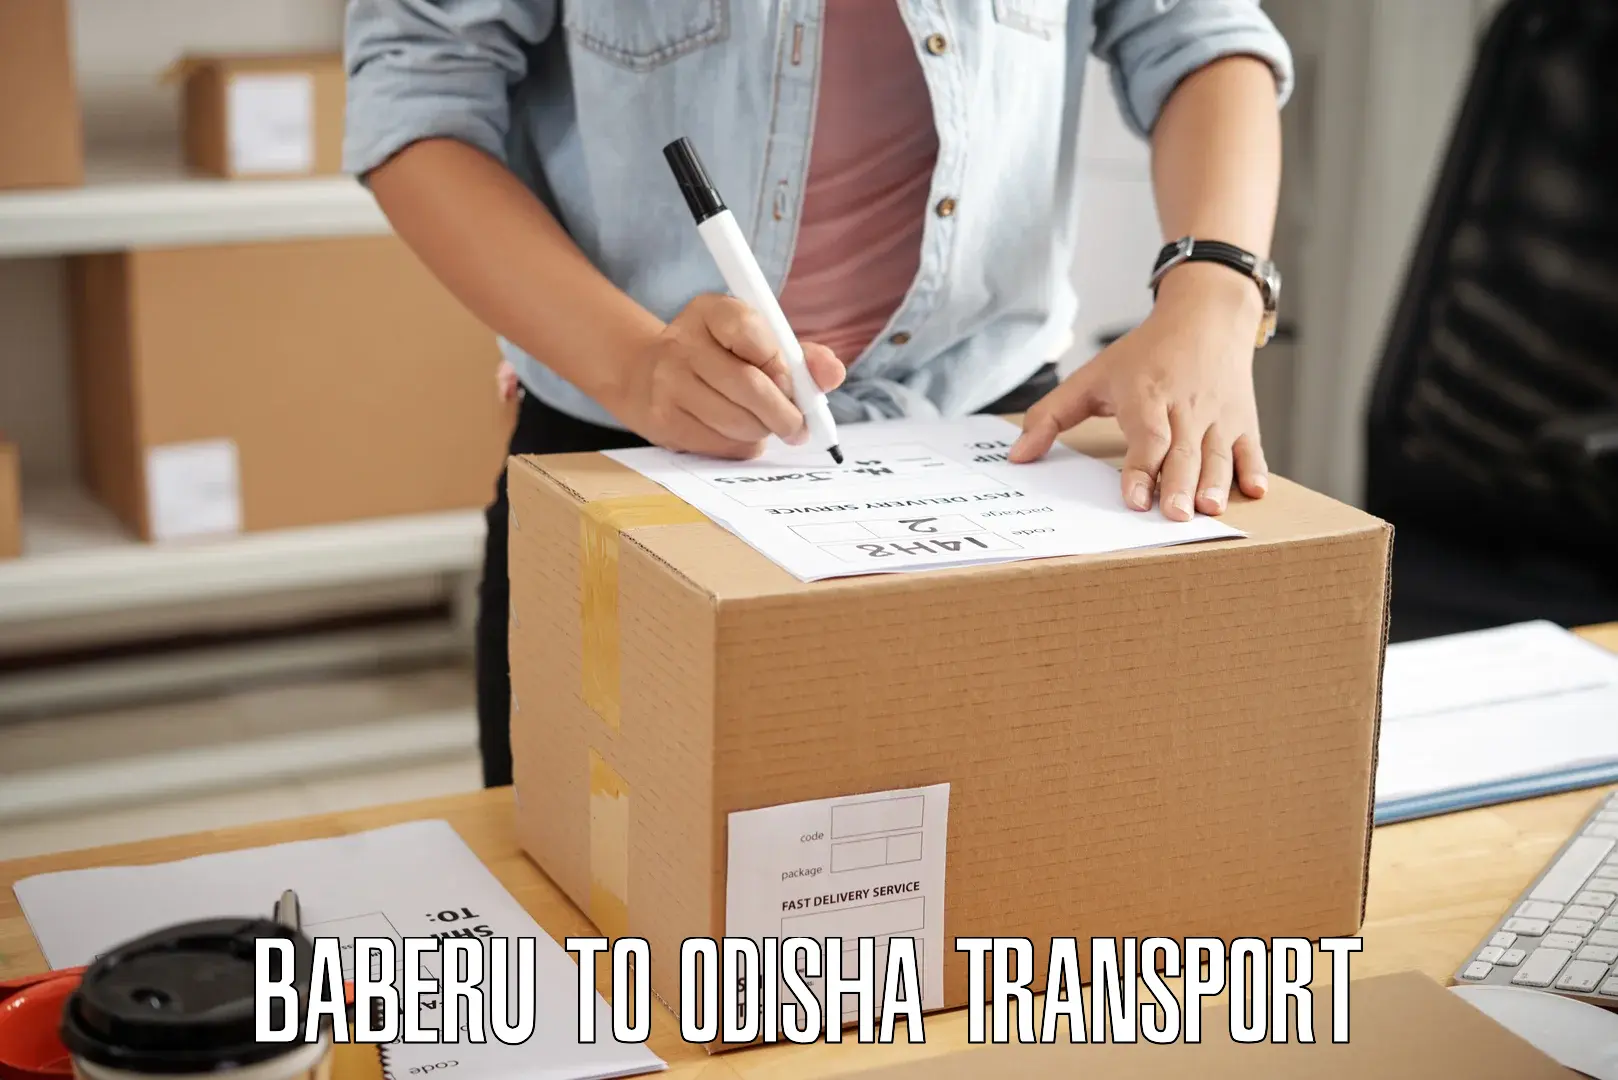 Daily parcel service transport Baberu to Konark